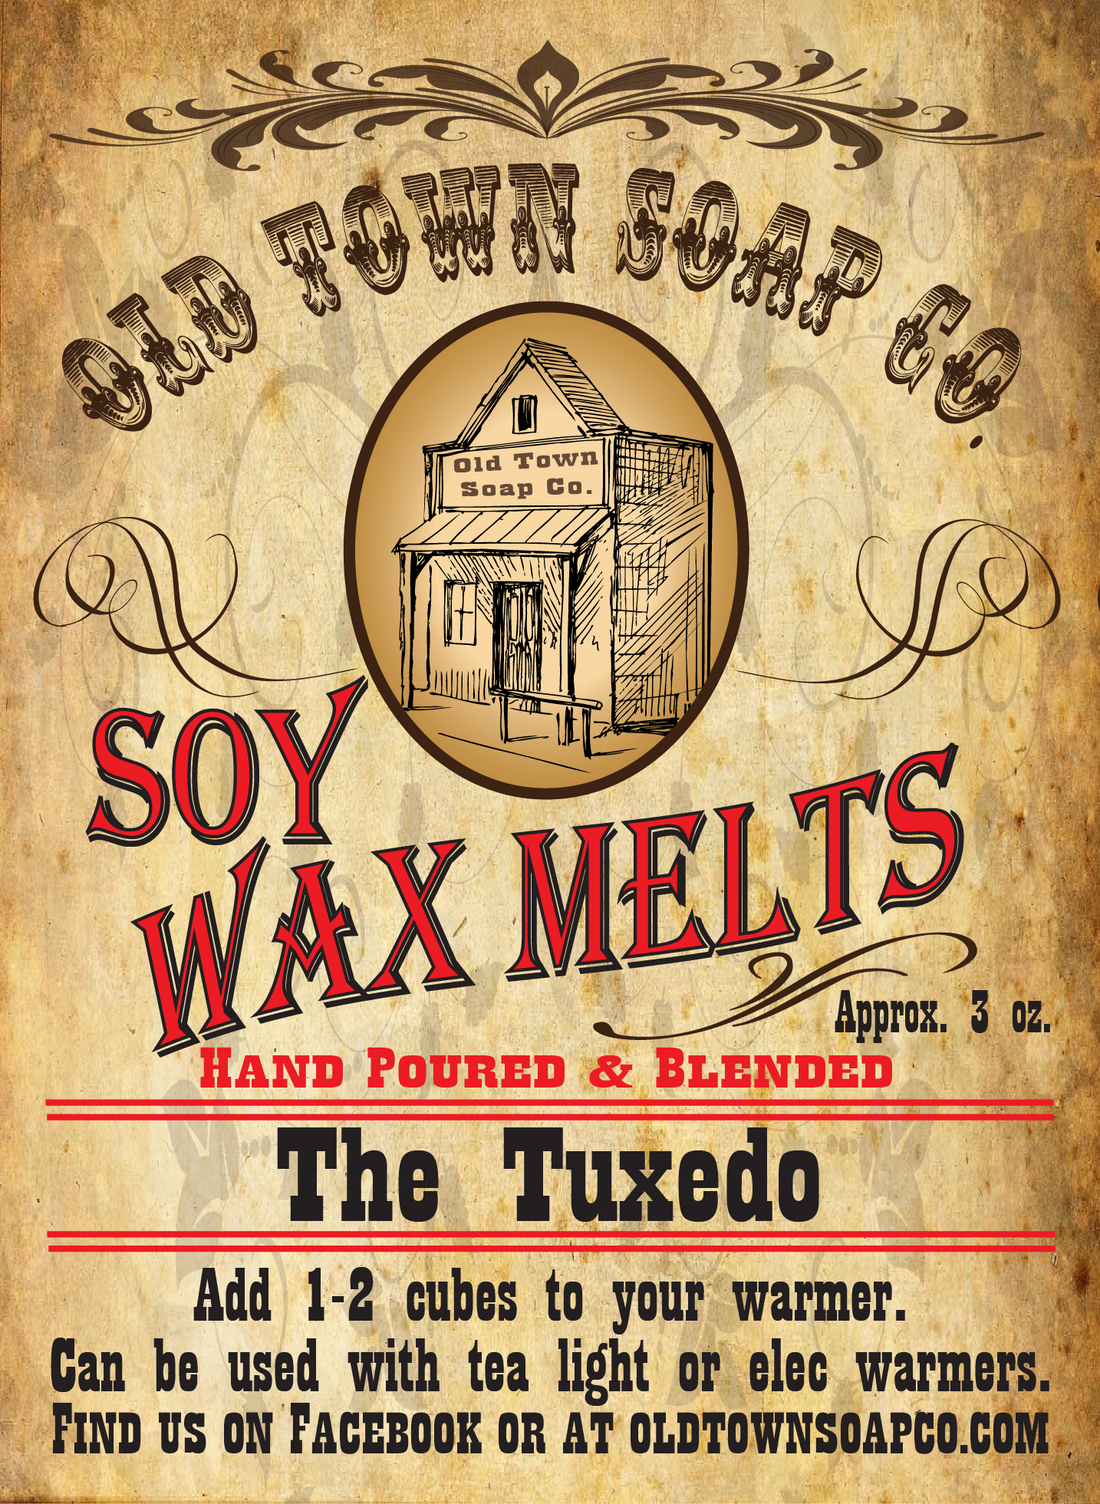 The Tuxedo Wax Melts